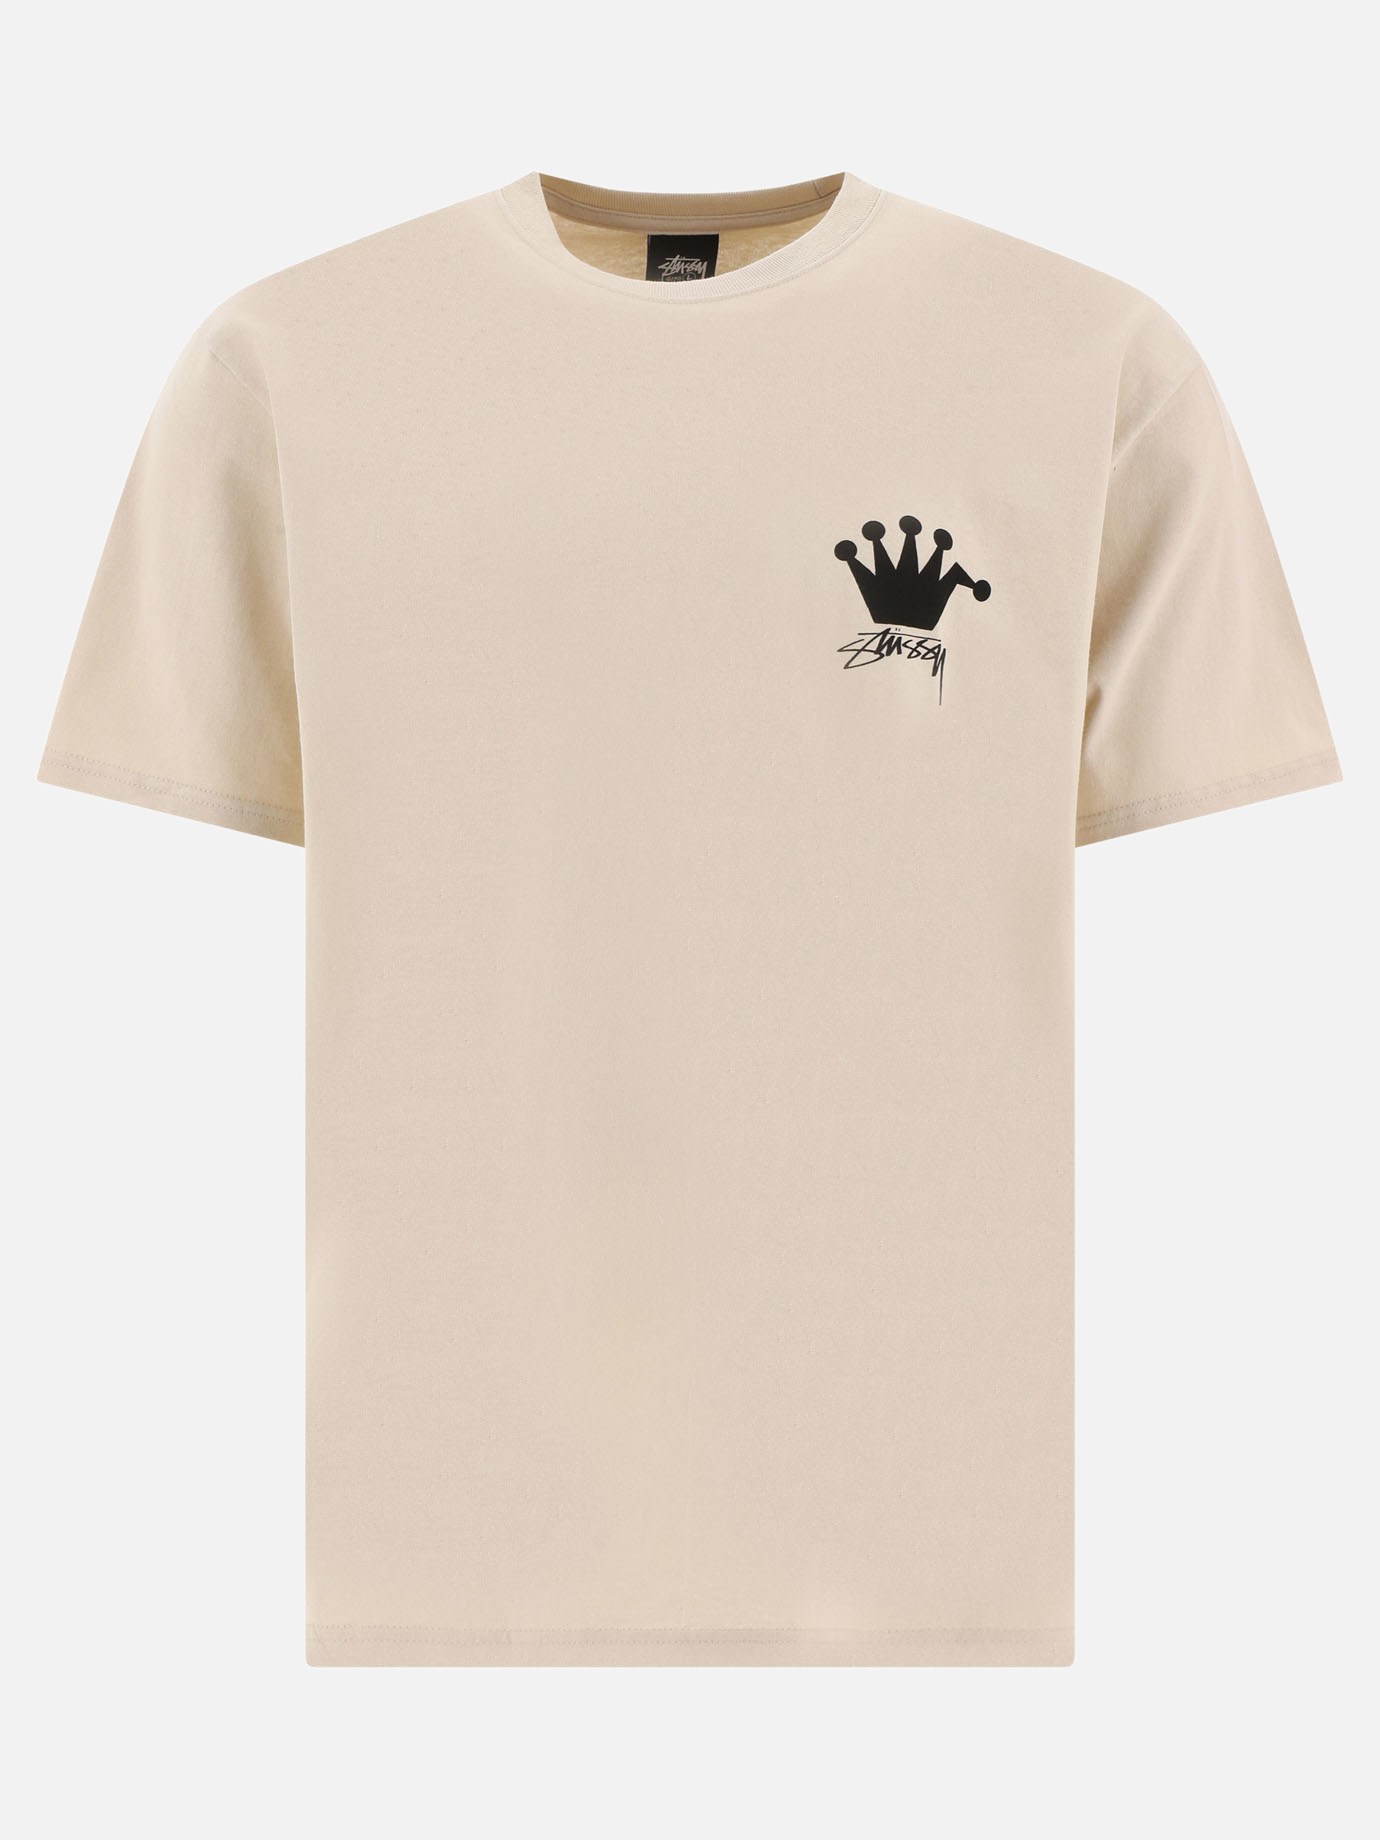  LB Crown  t-shirtby Stüssy - 4